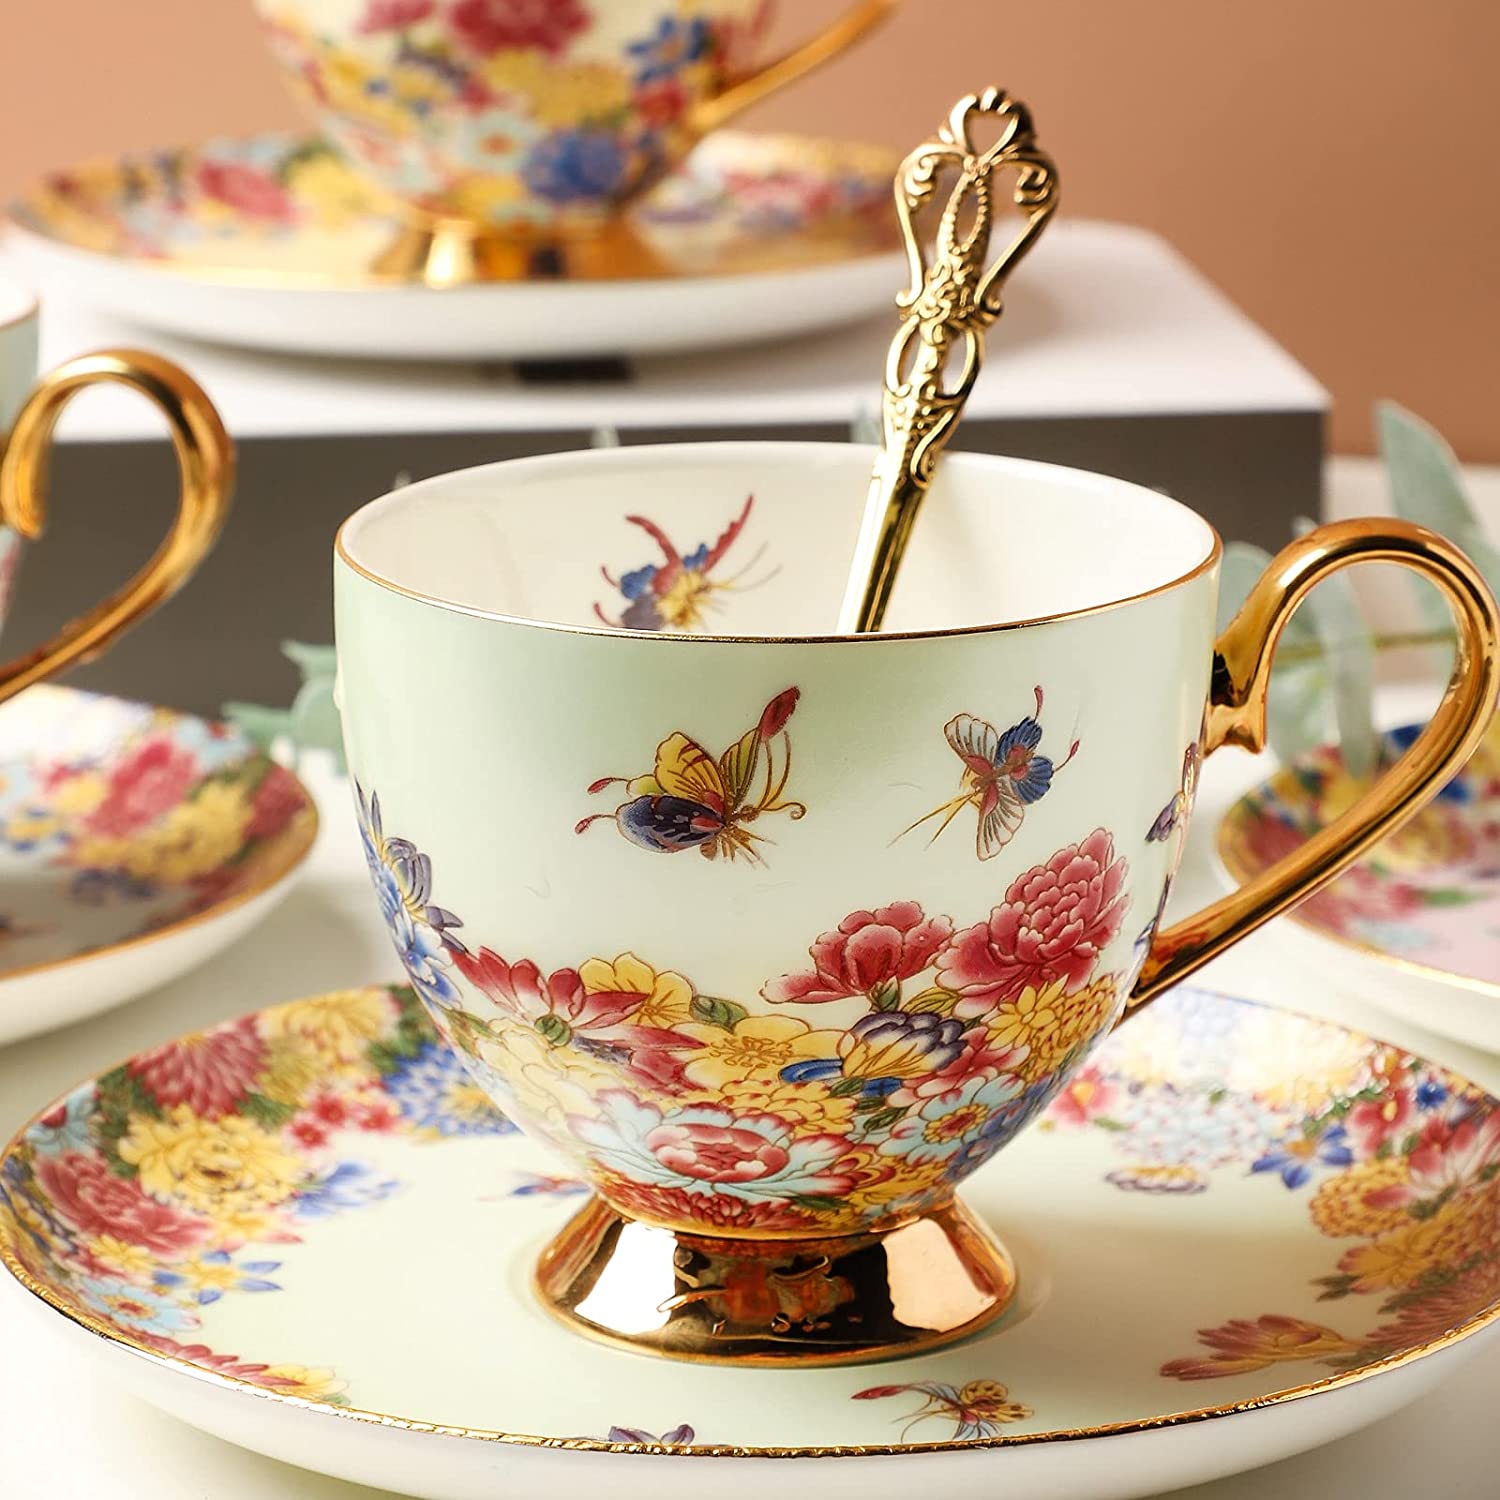 Cottagecore Butterflies & Floral Design Paper Tea Cups & Saucers - 8 Ct.